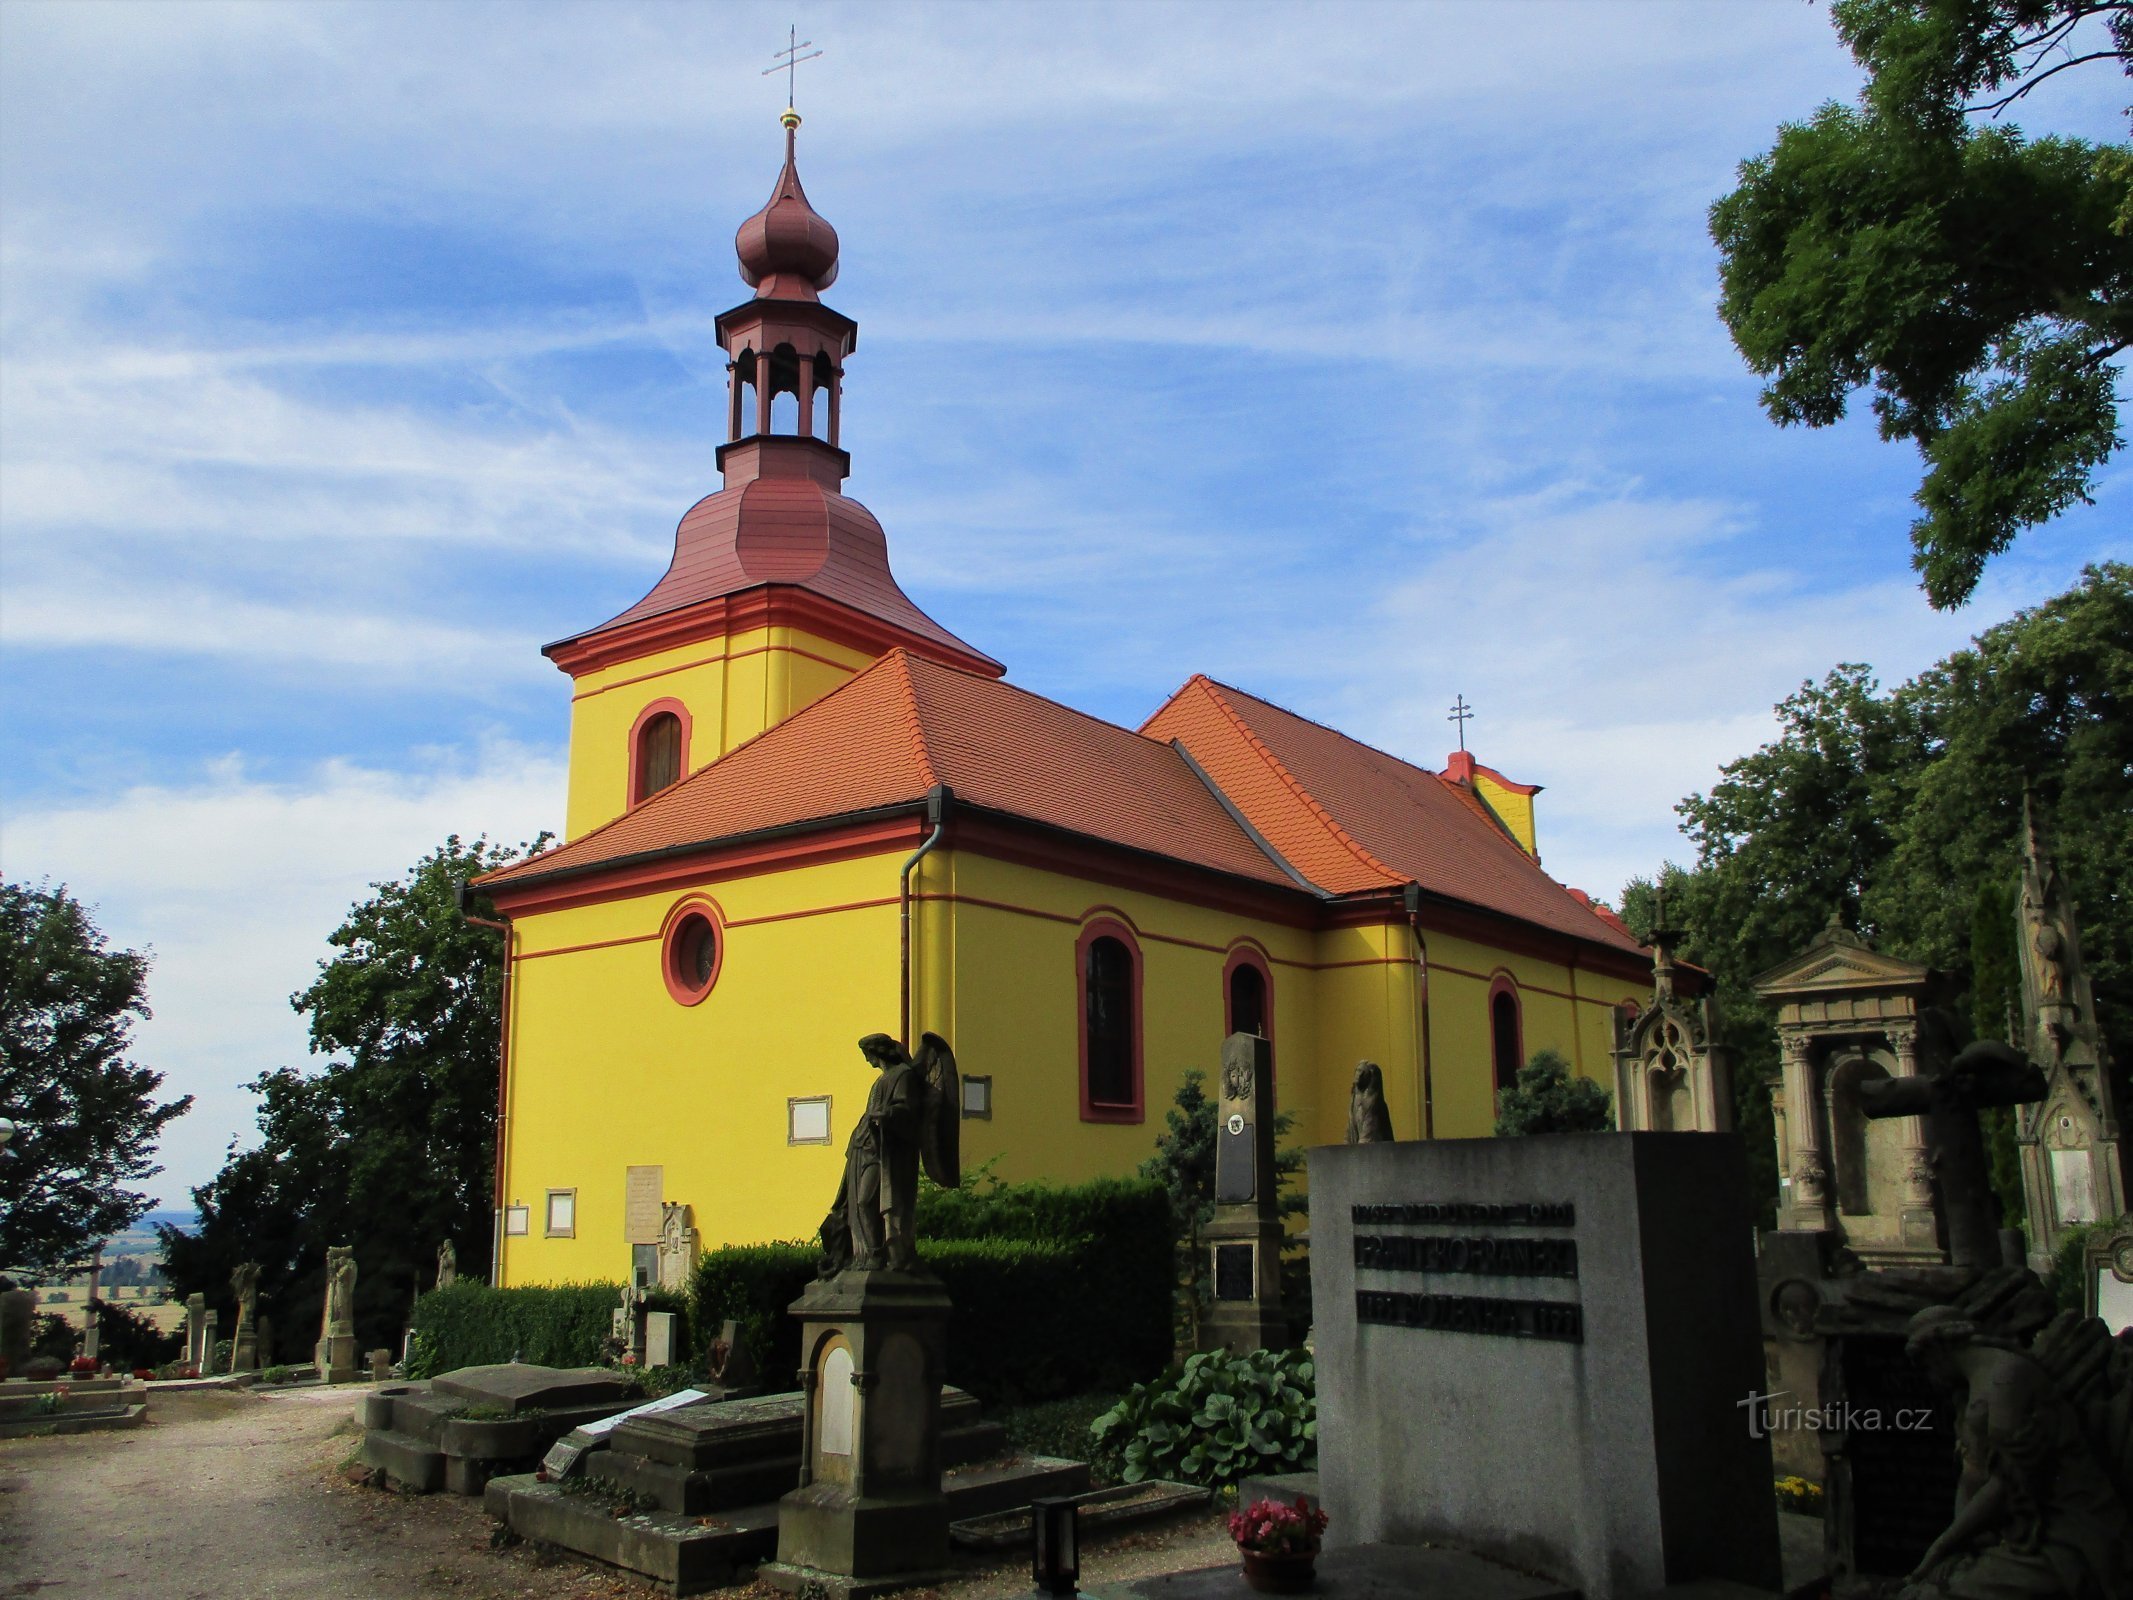 Кладбищенская церковь св. Готард, епископ (Горжице, 26.7.2020)